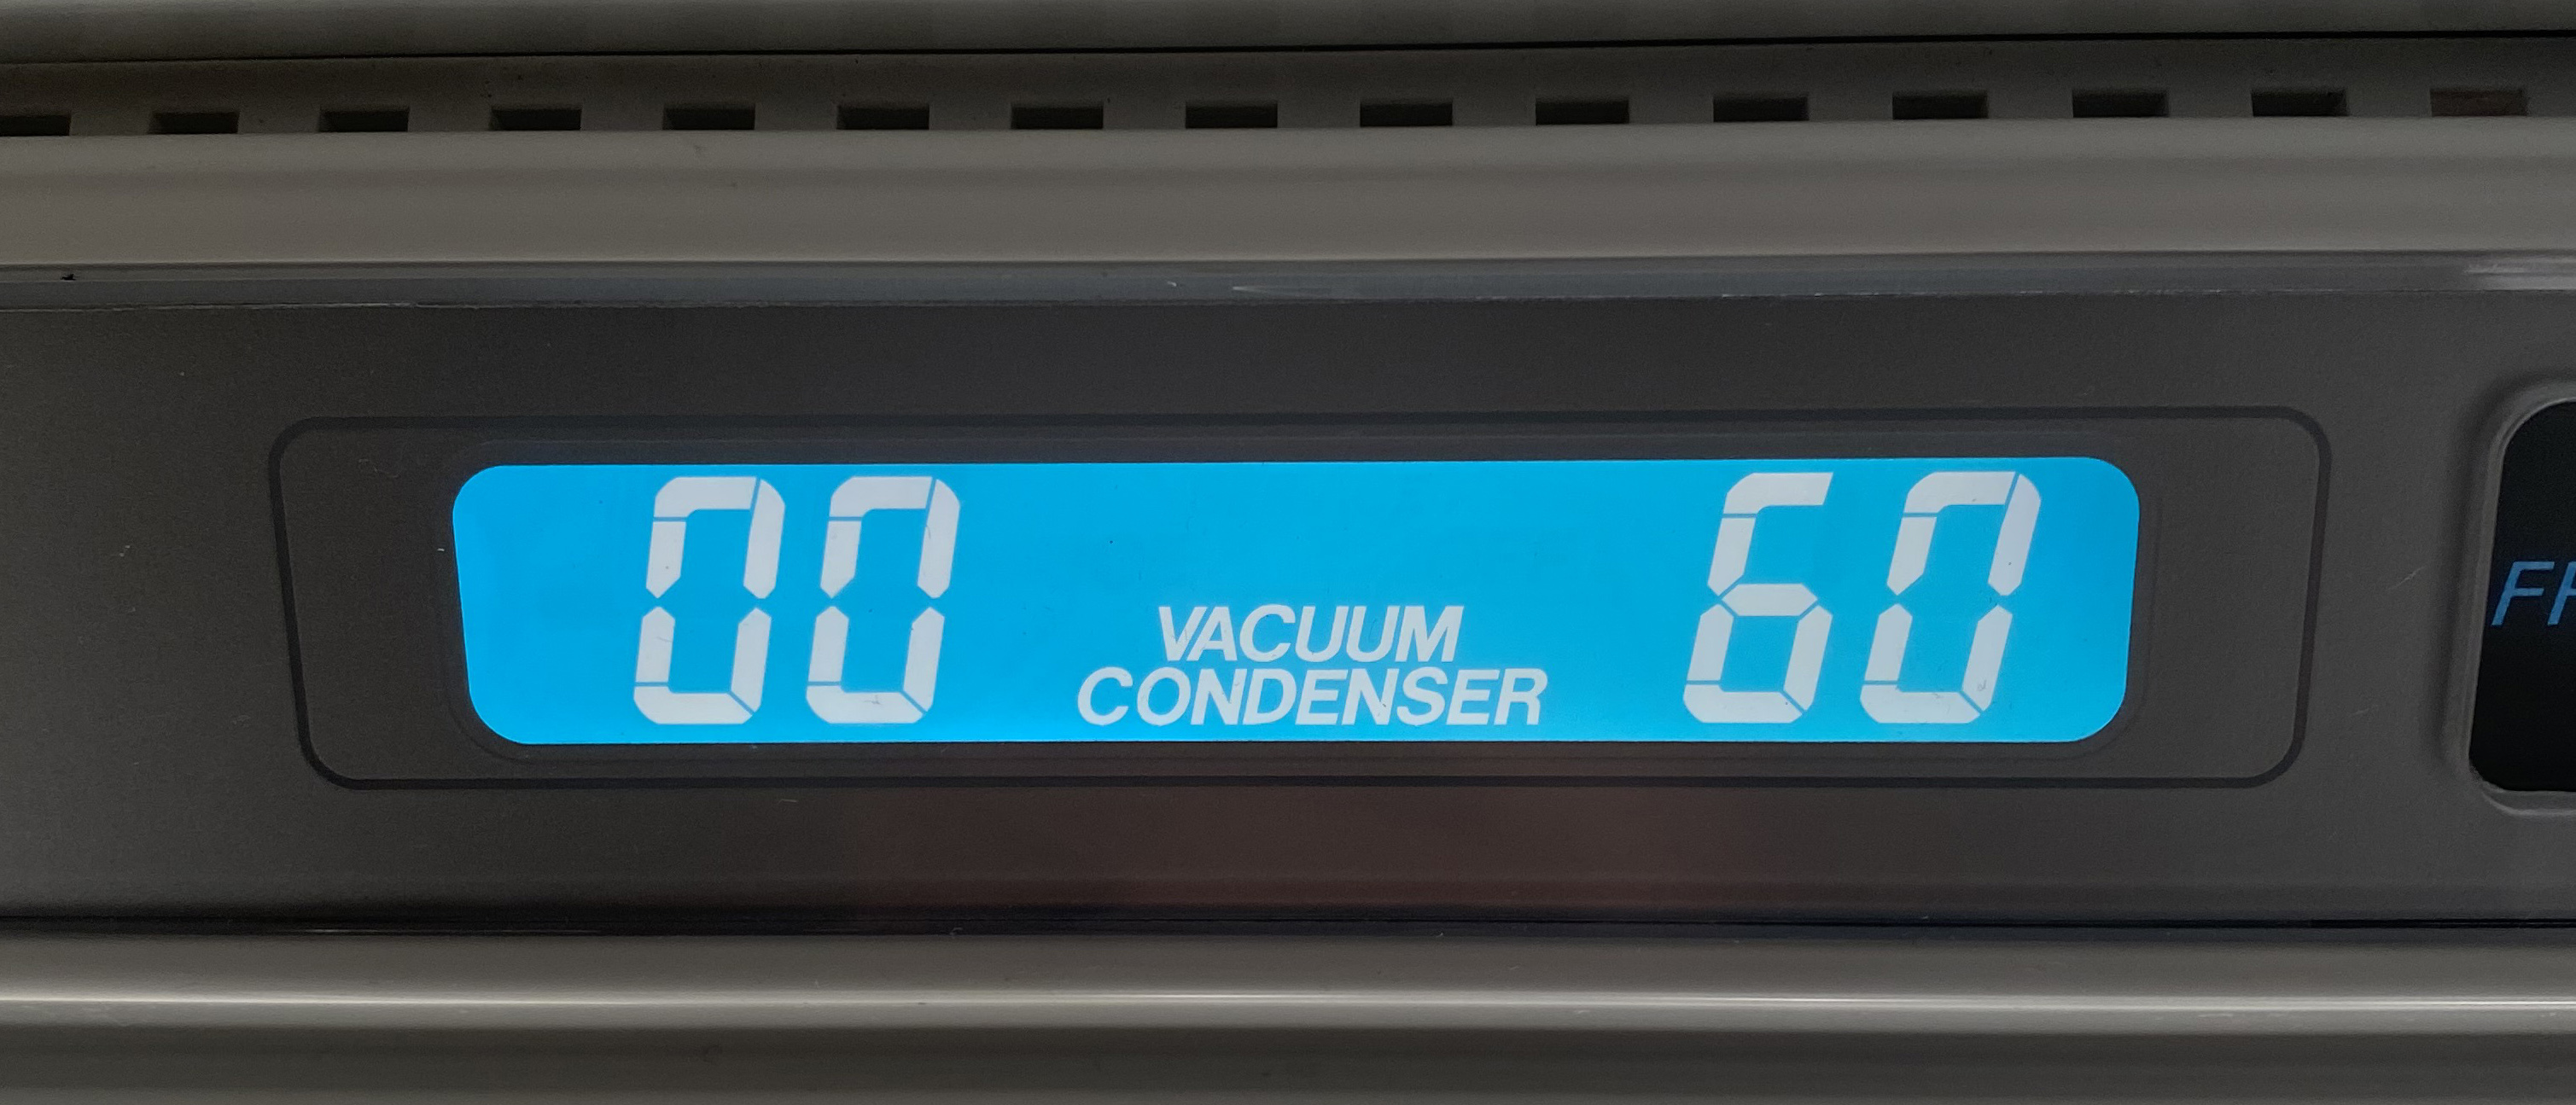 Vacuum Condenser Error Code